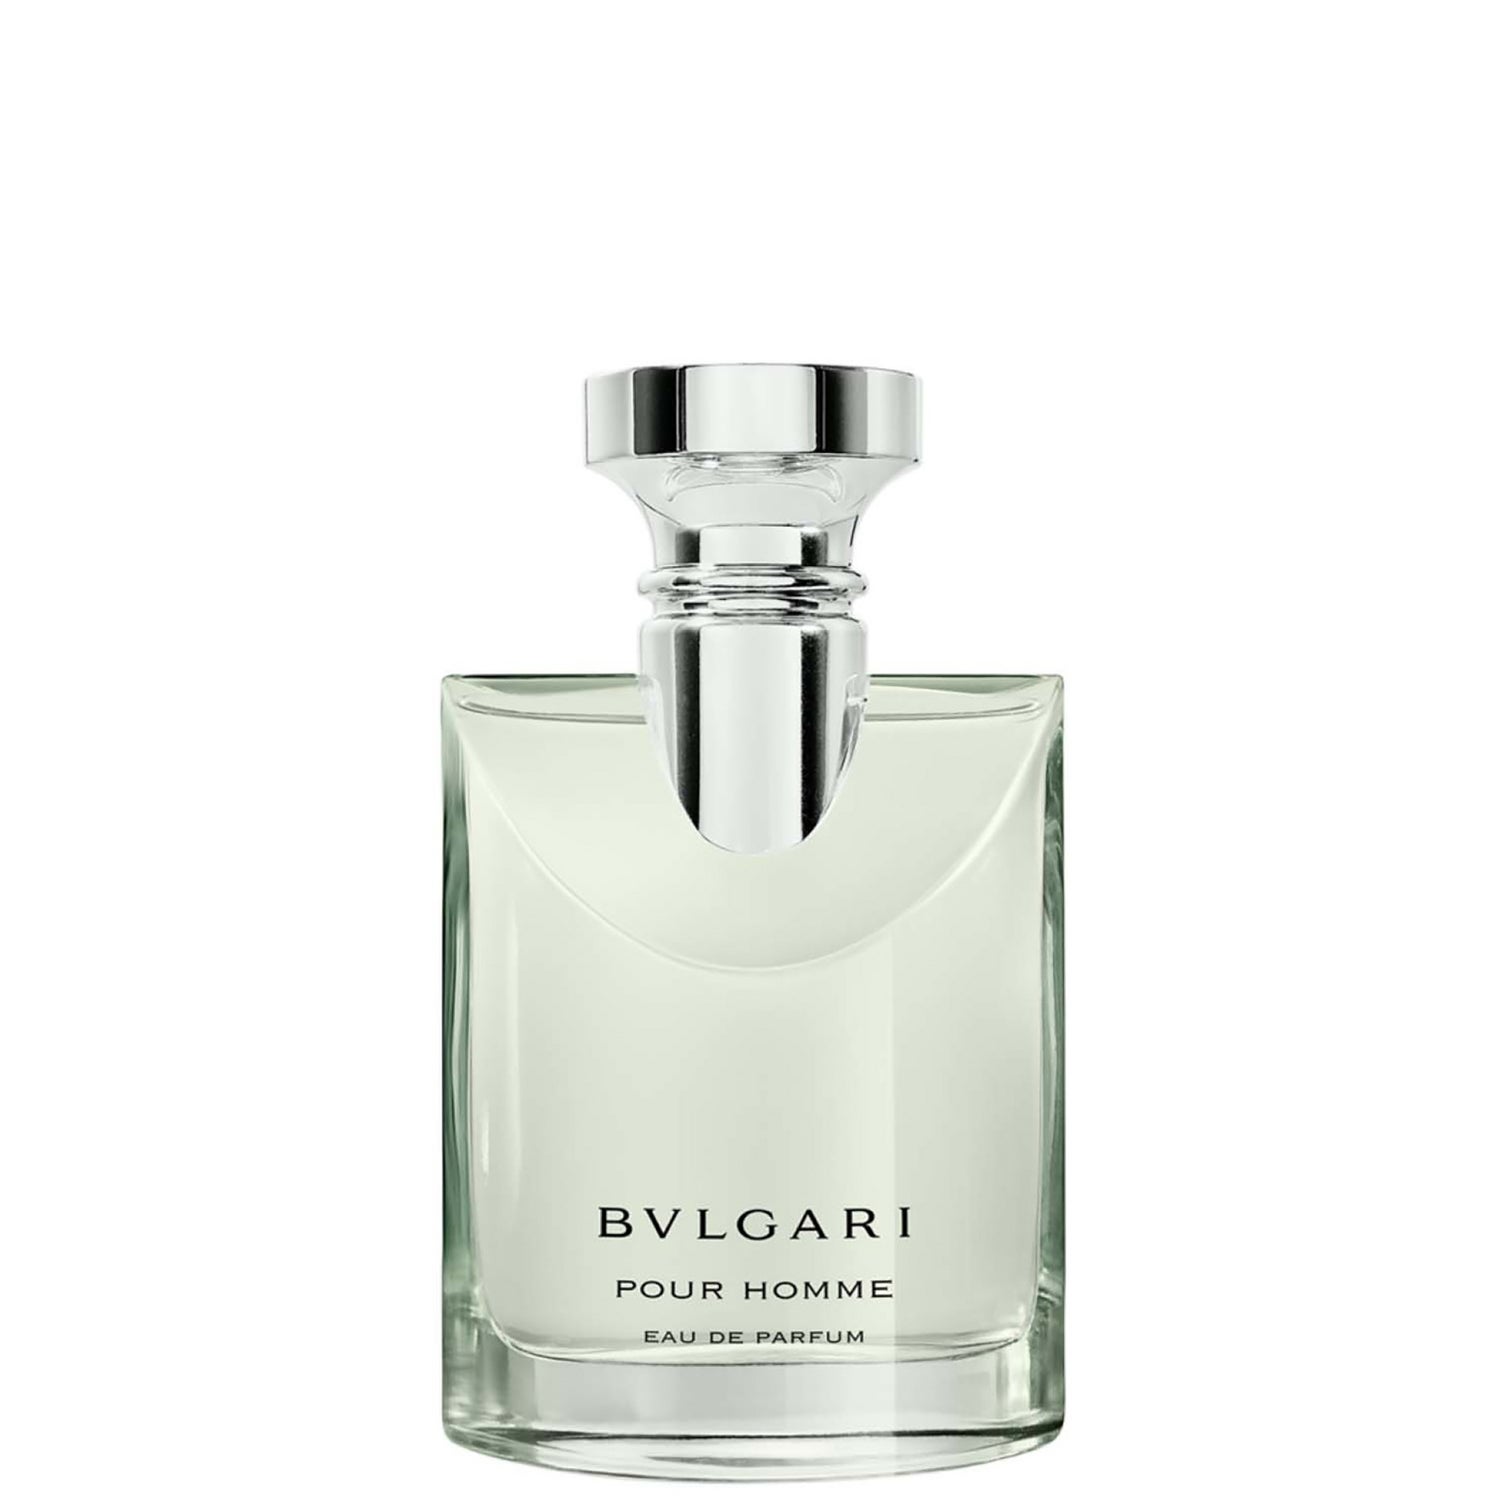 BVLGARI Pour Homme Eau de Parfum 50ml